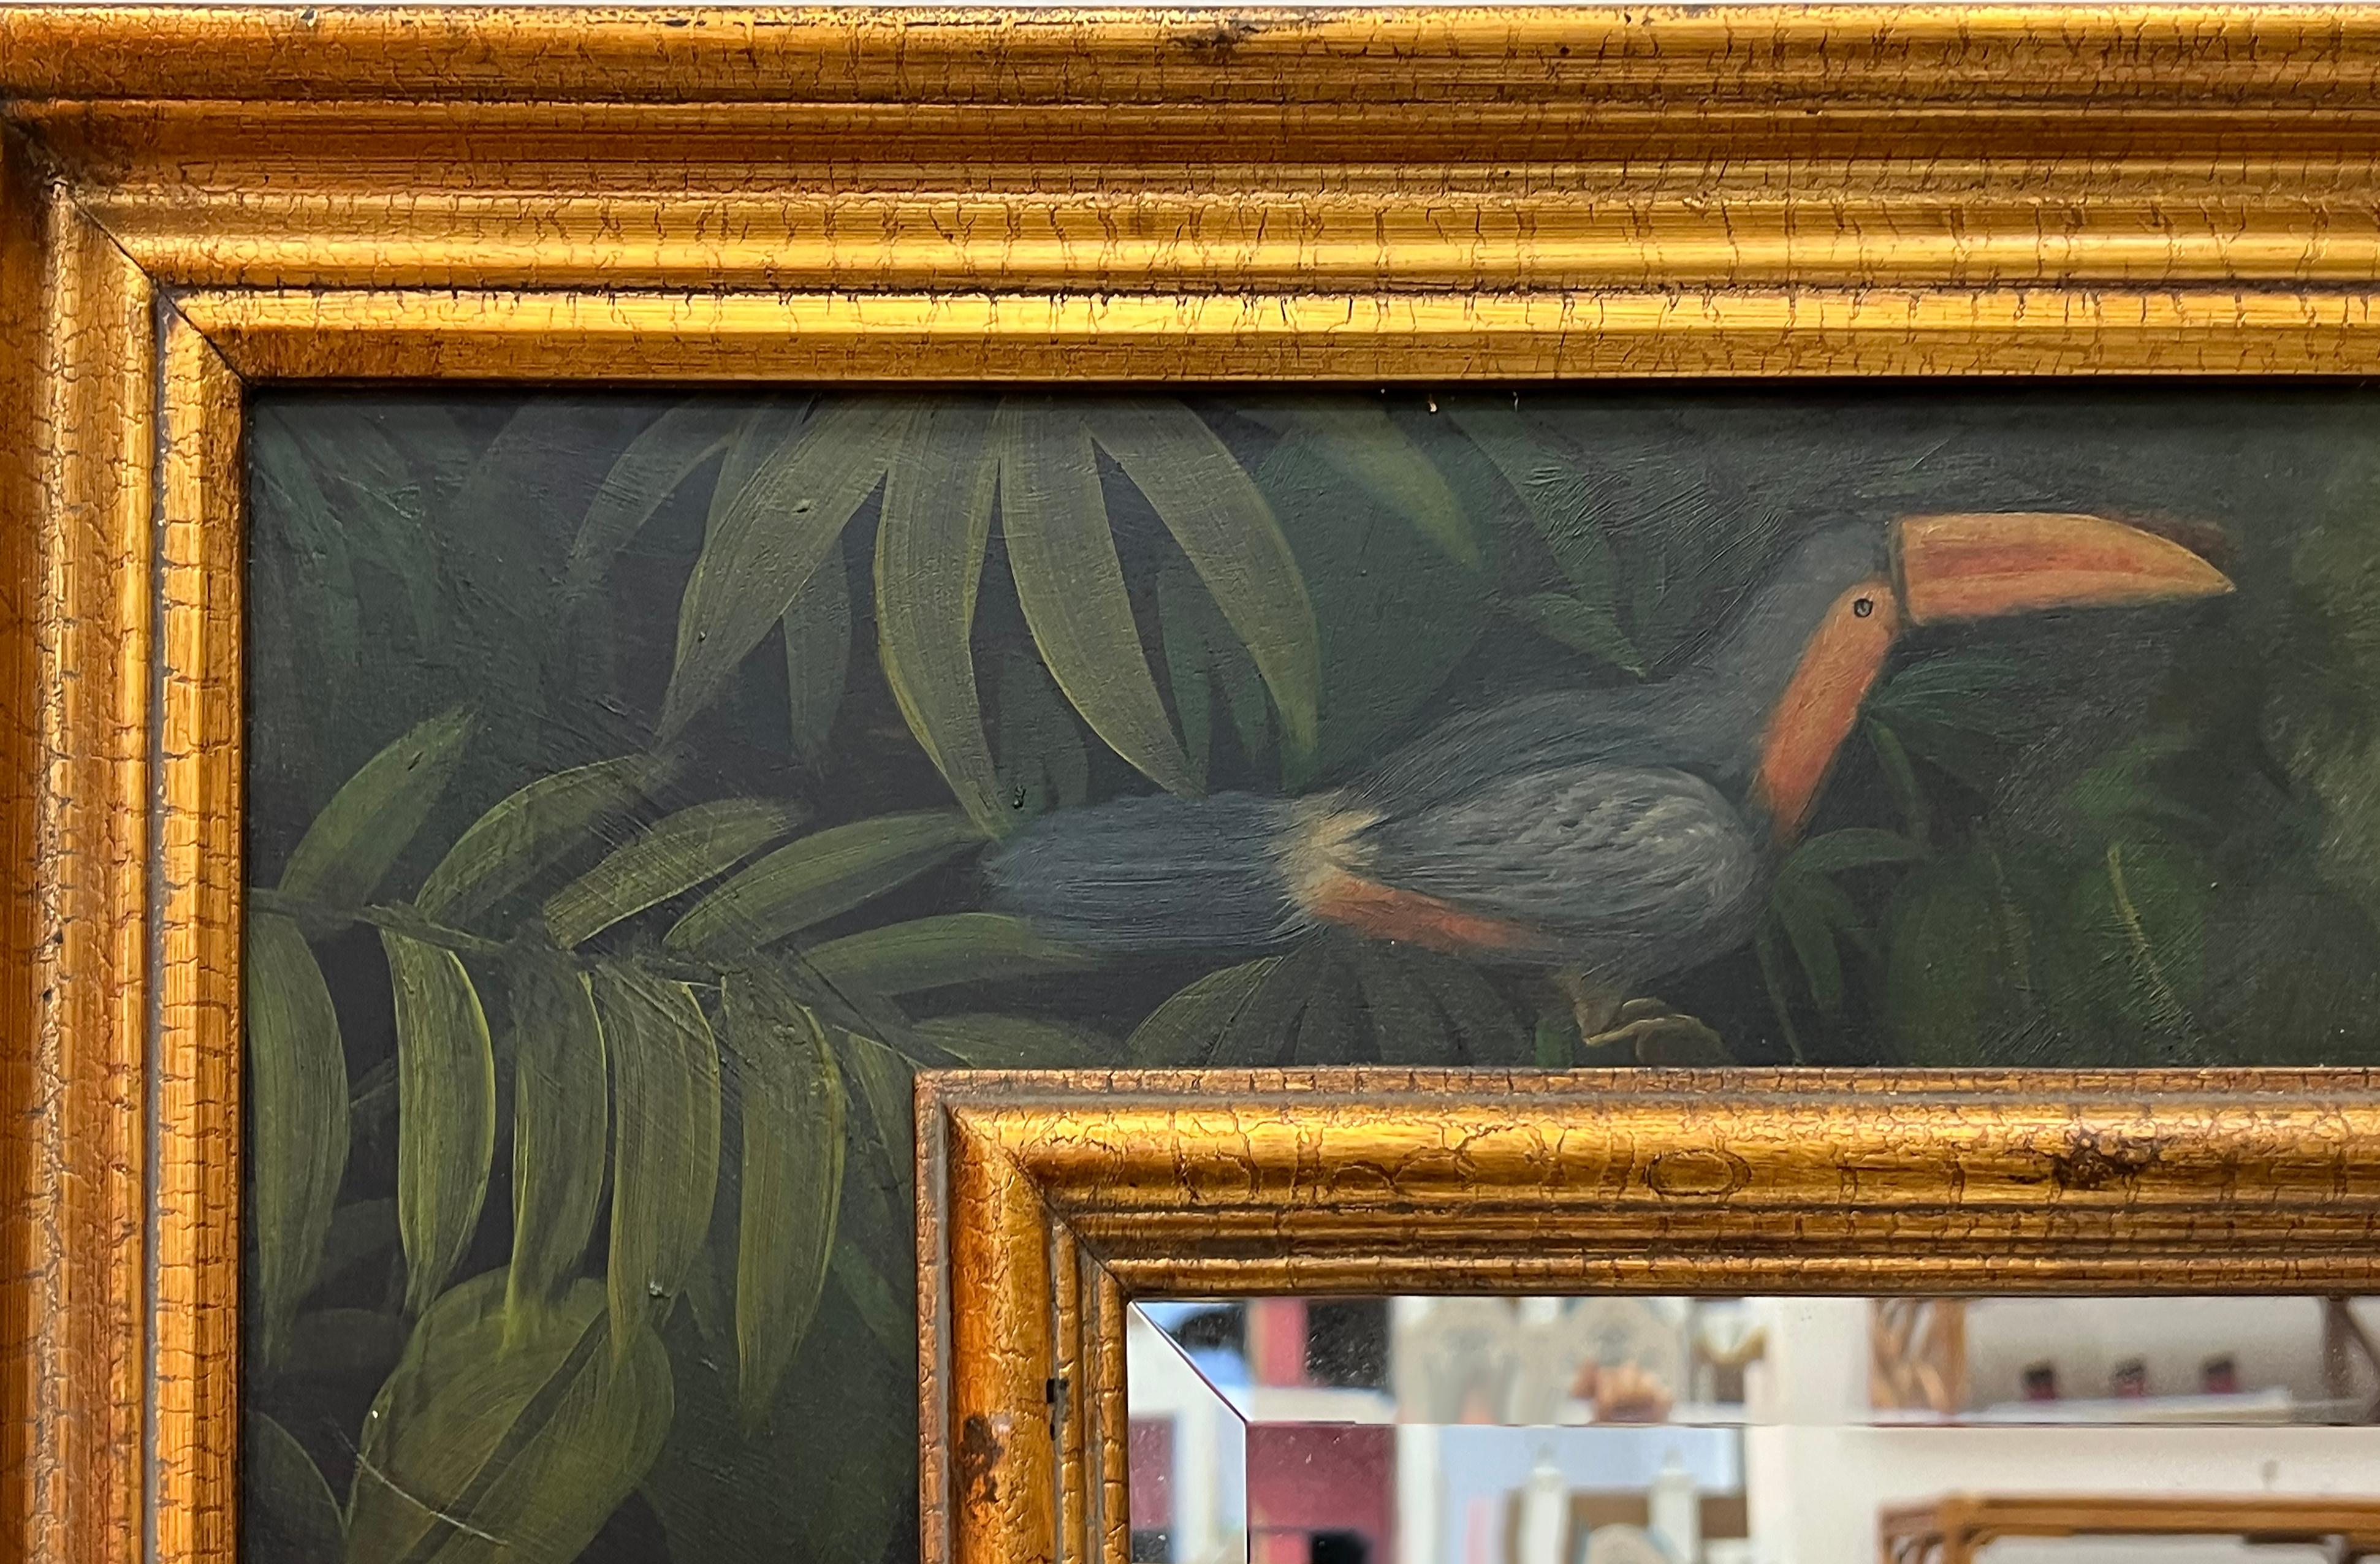 Vintage Palm Beach Regency Hand gemalten abgeschrägten Spiegel, Tukan mit Laub (Abgeschrägt)